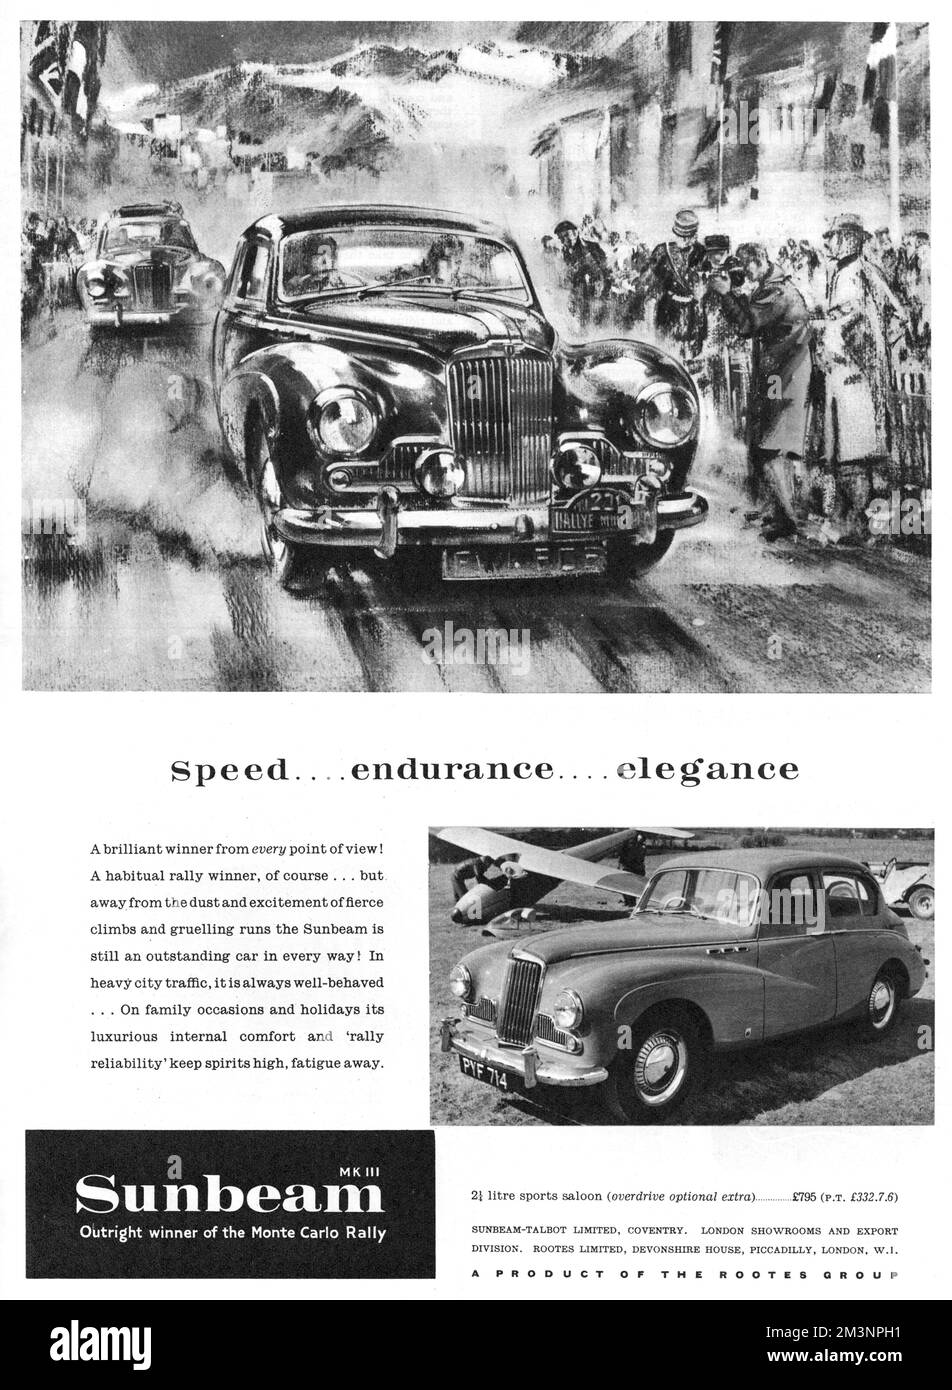 Vitesse... endurance... élégance. Le Sunbeam, Mk III, remportant le Monte Carlo Rally. Date: 1955 Banque D'Images